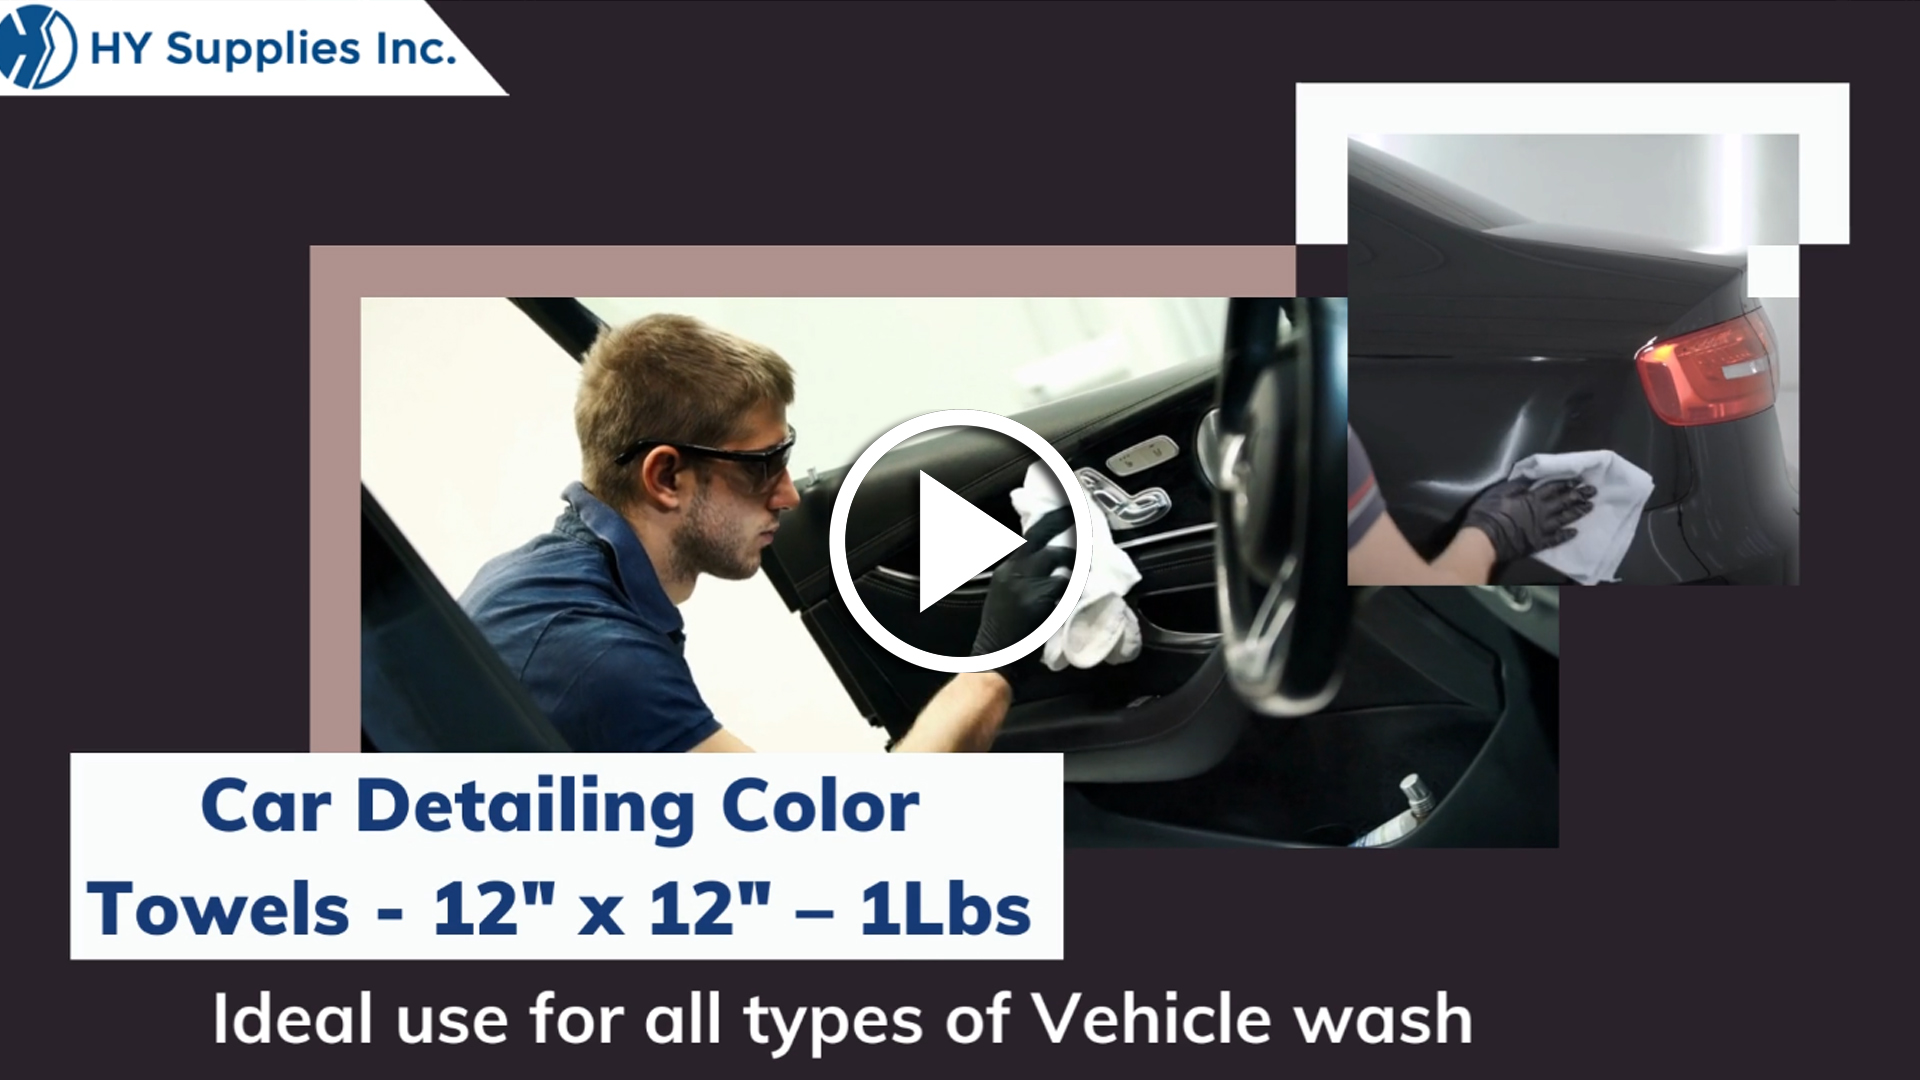 Car Detailing Color Towels - 12"" x 12"" – 1Lbs.